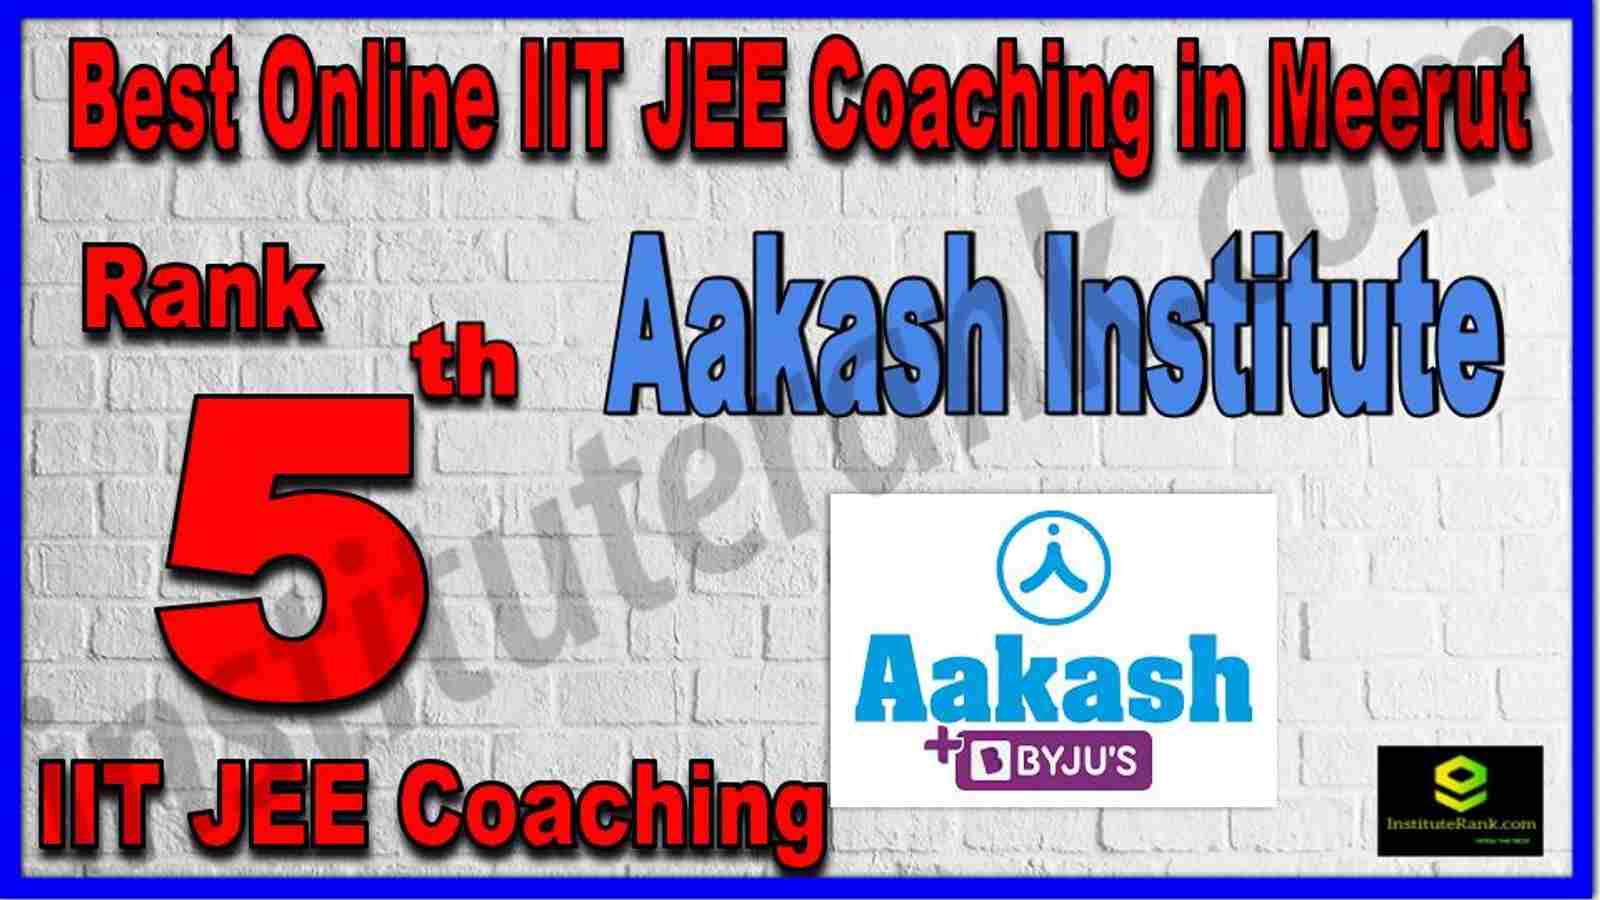 Rank 5th Best Online IIT JEE Coaching in Meerut